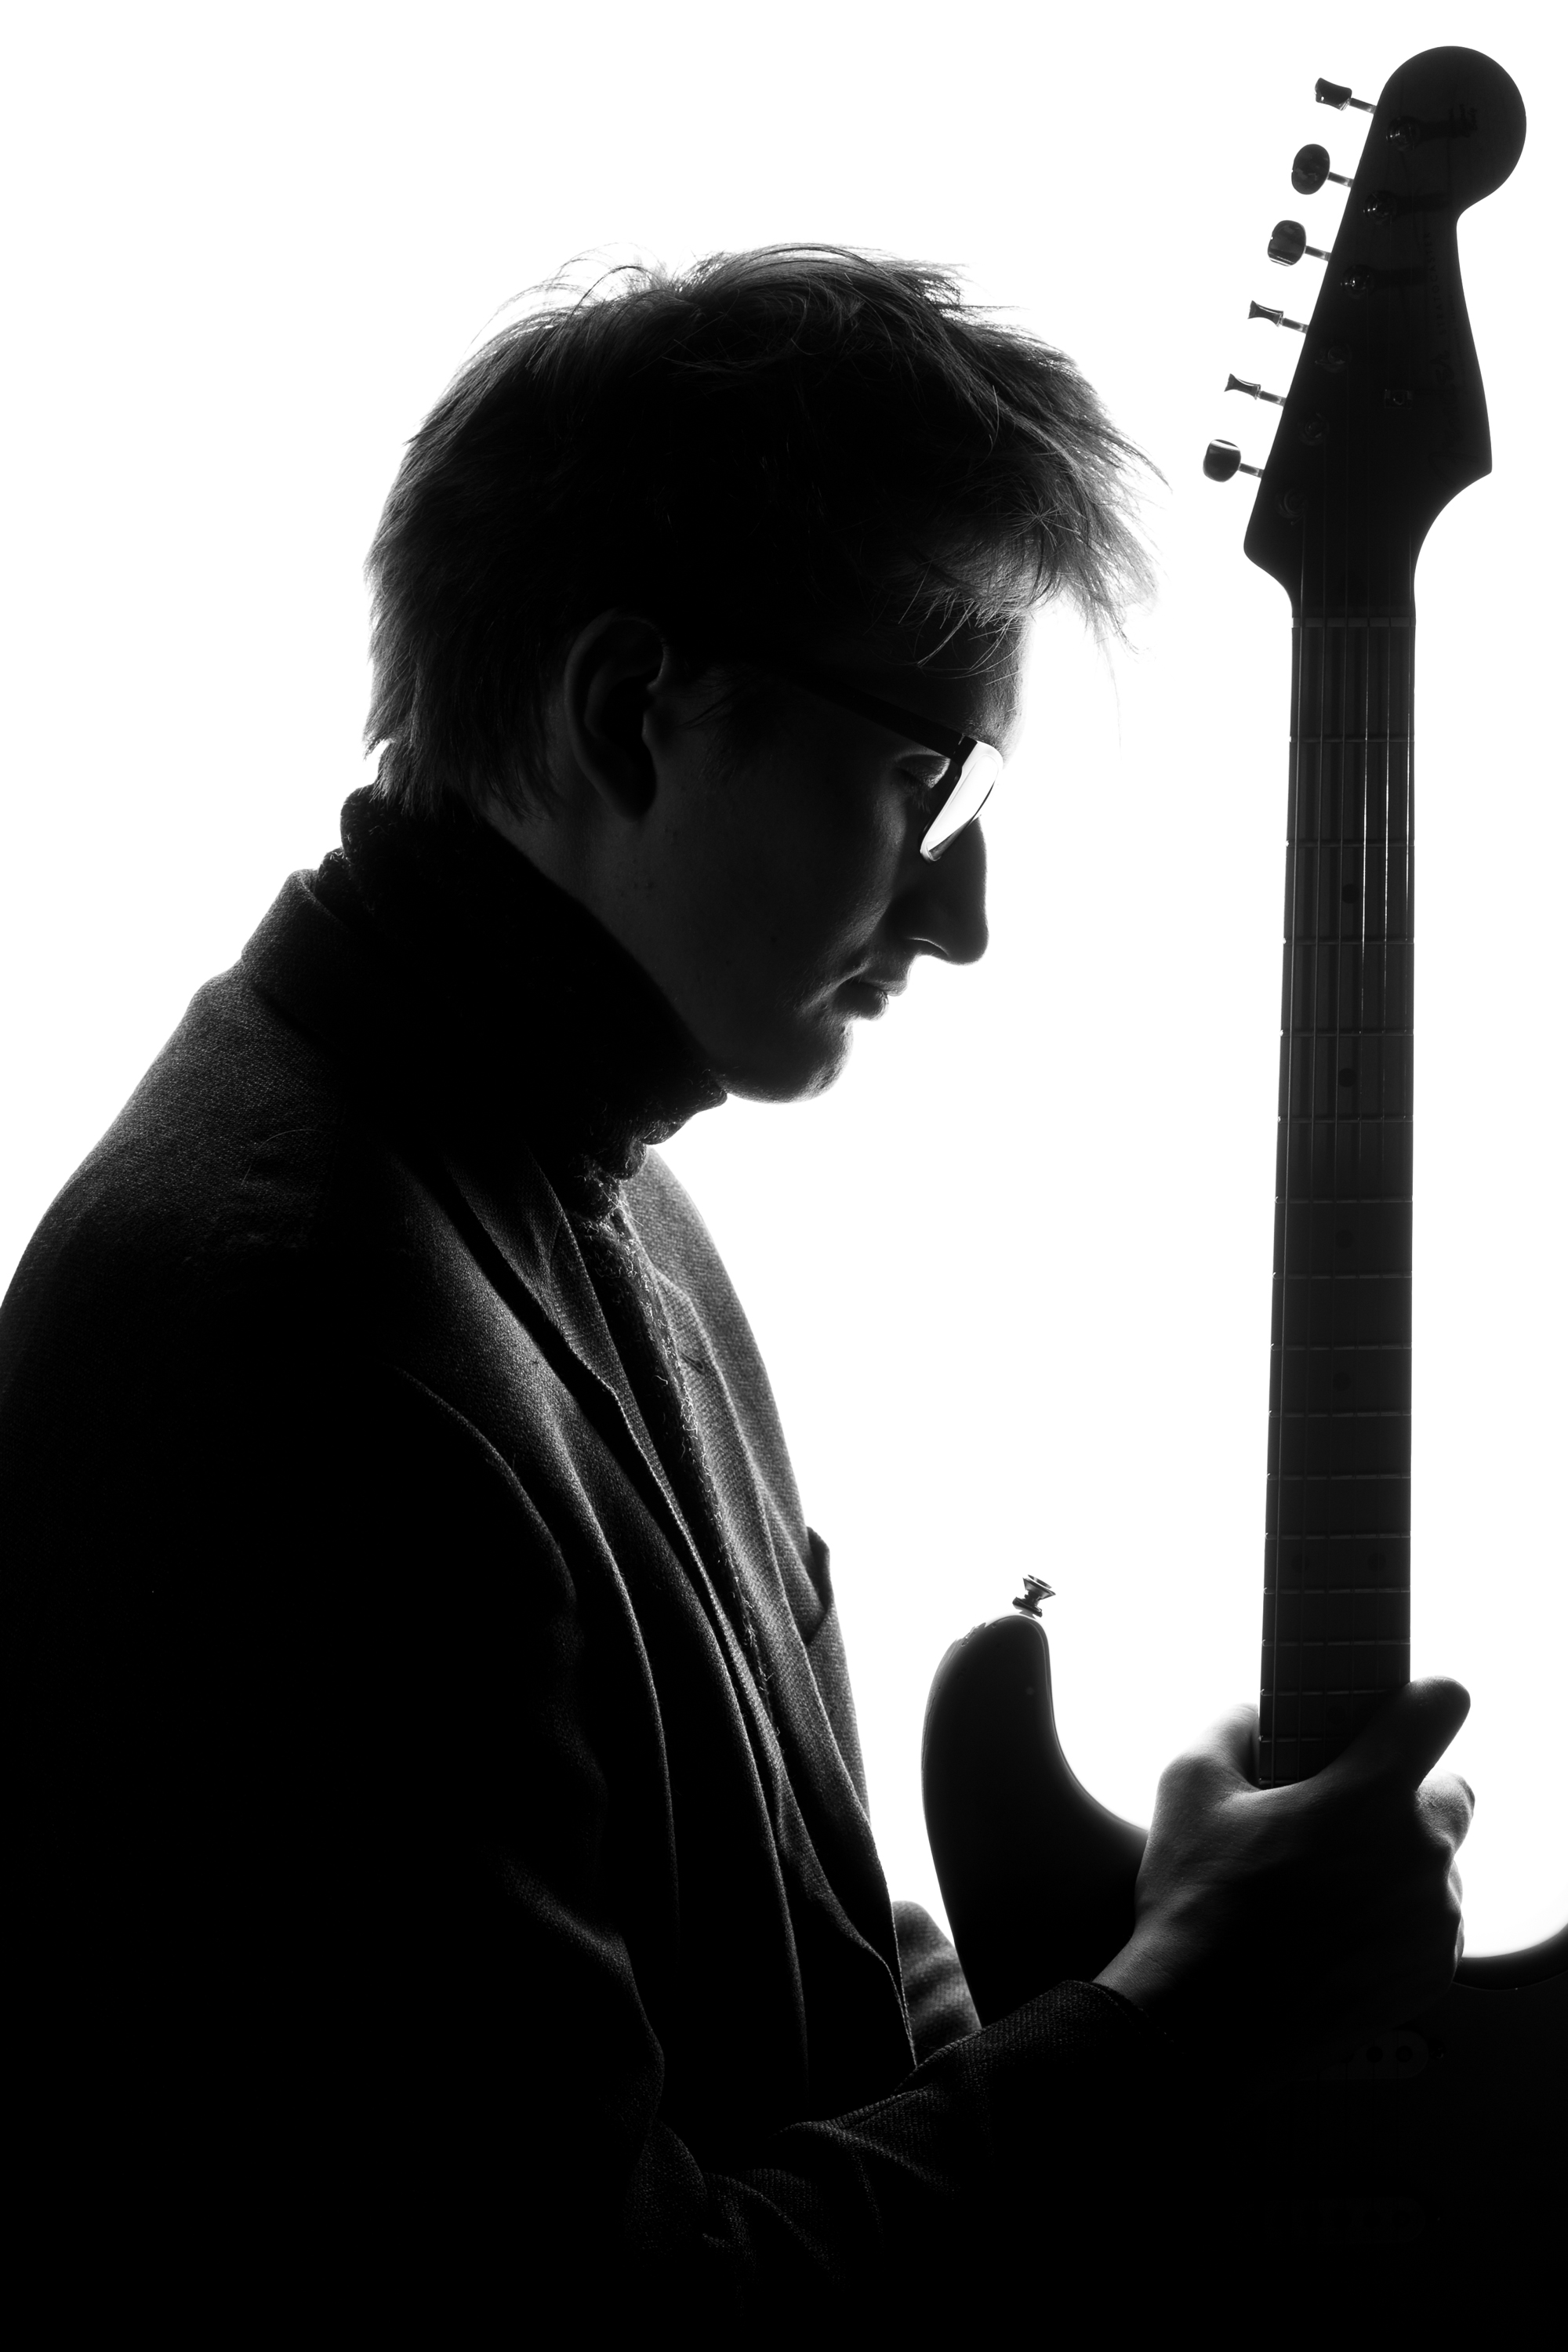 mustvalge pilt muusikust kitarriga